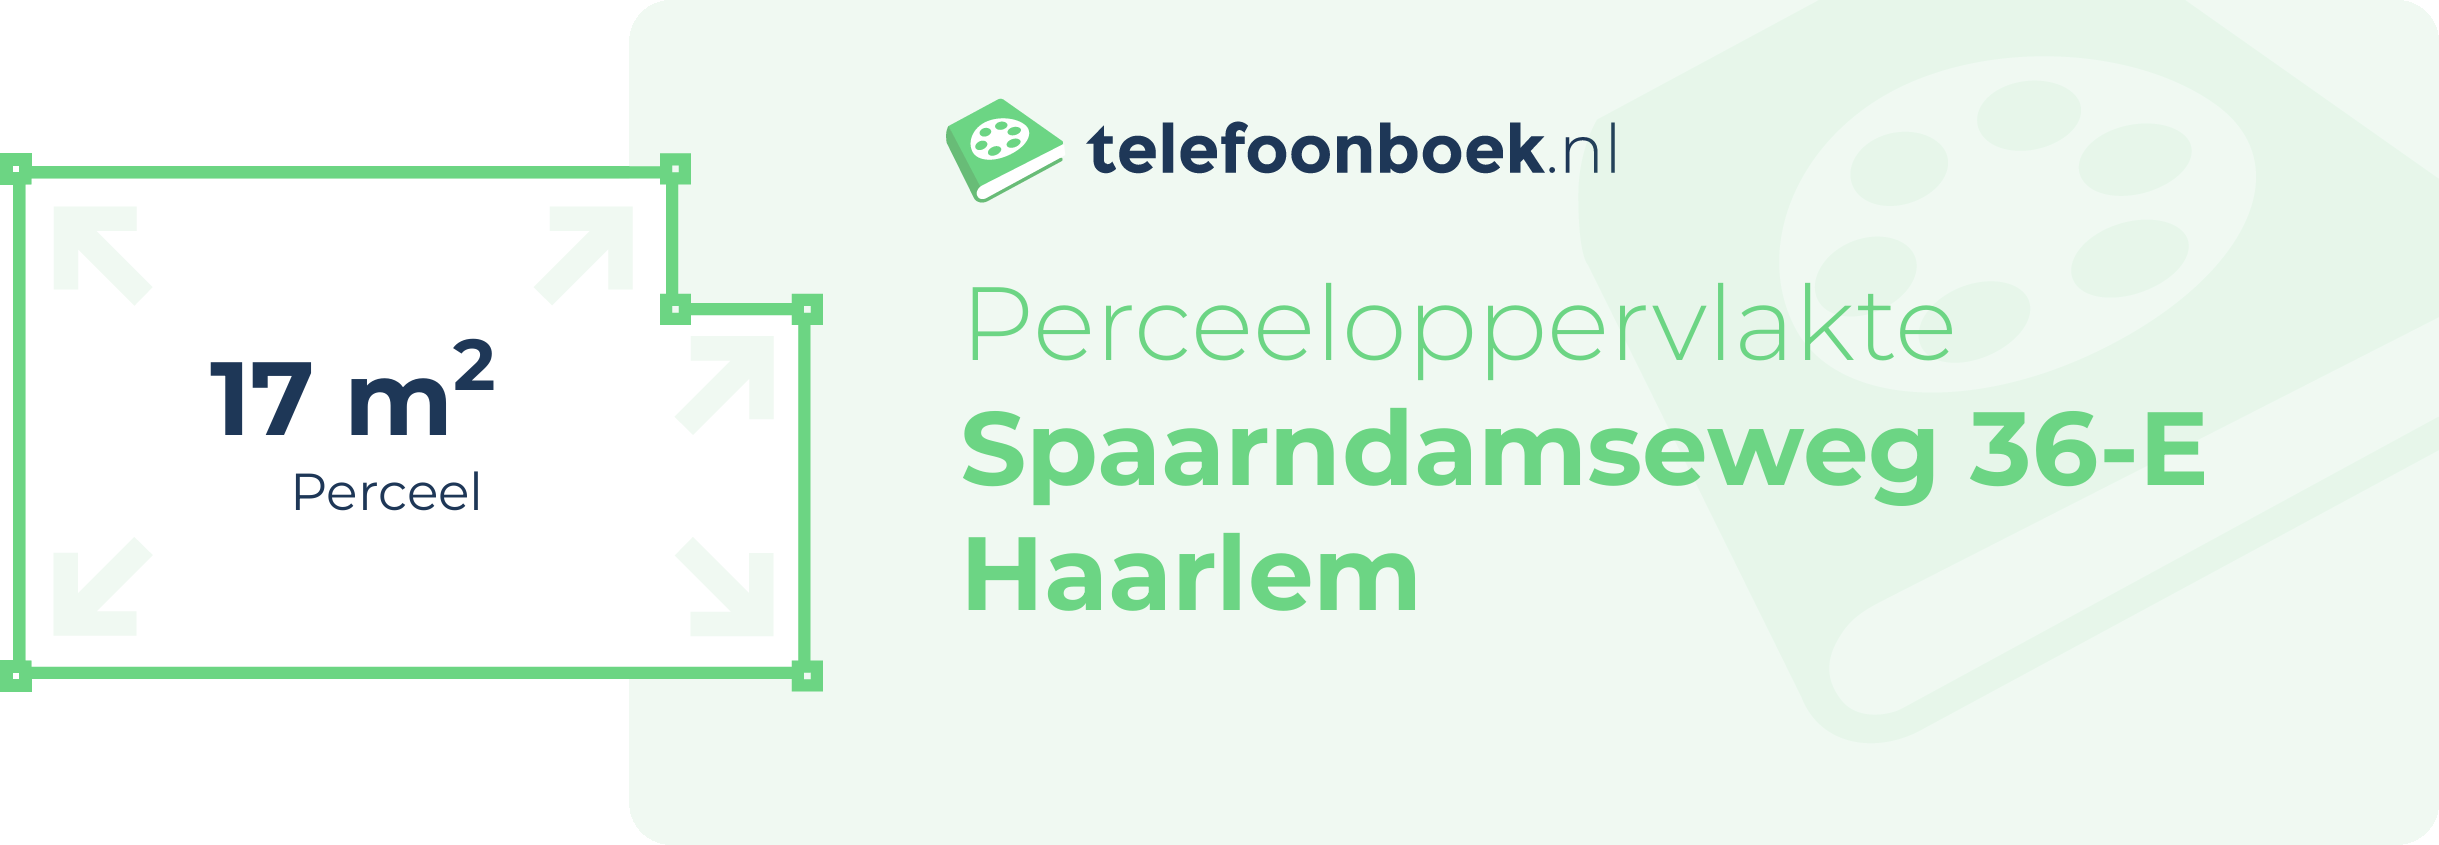 Perceeloppervlakte Spaarndamseweg 36-E Haarlem